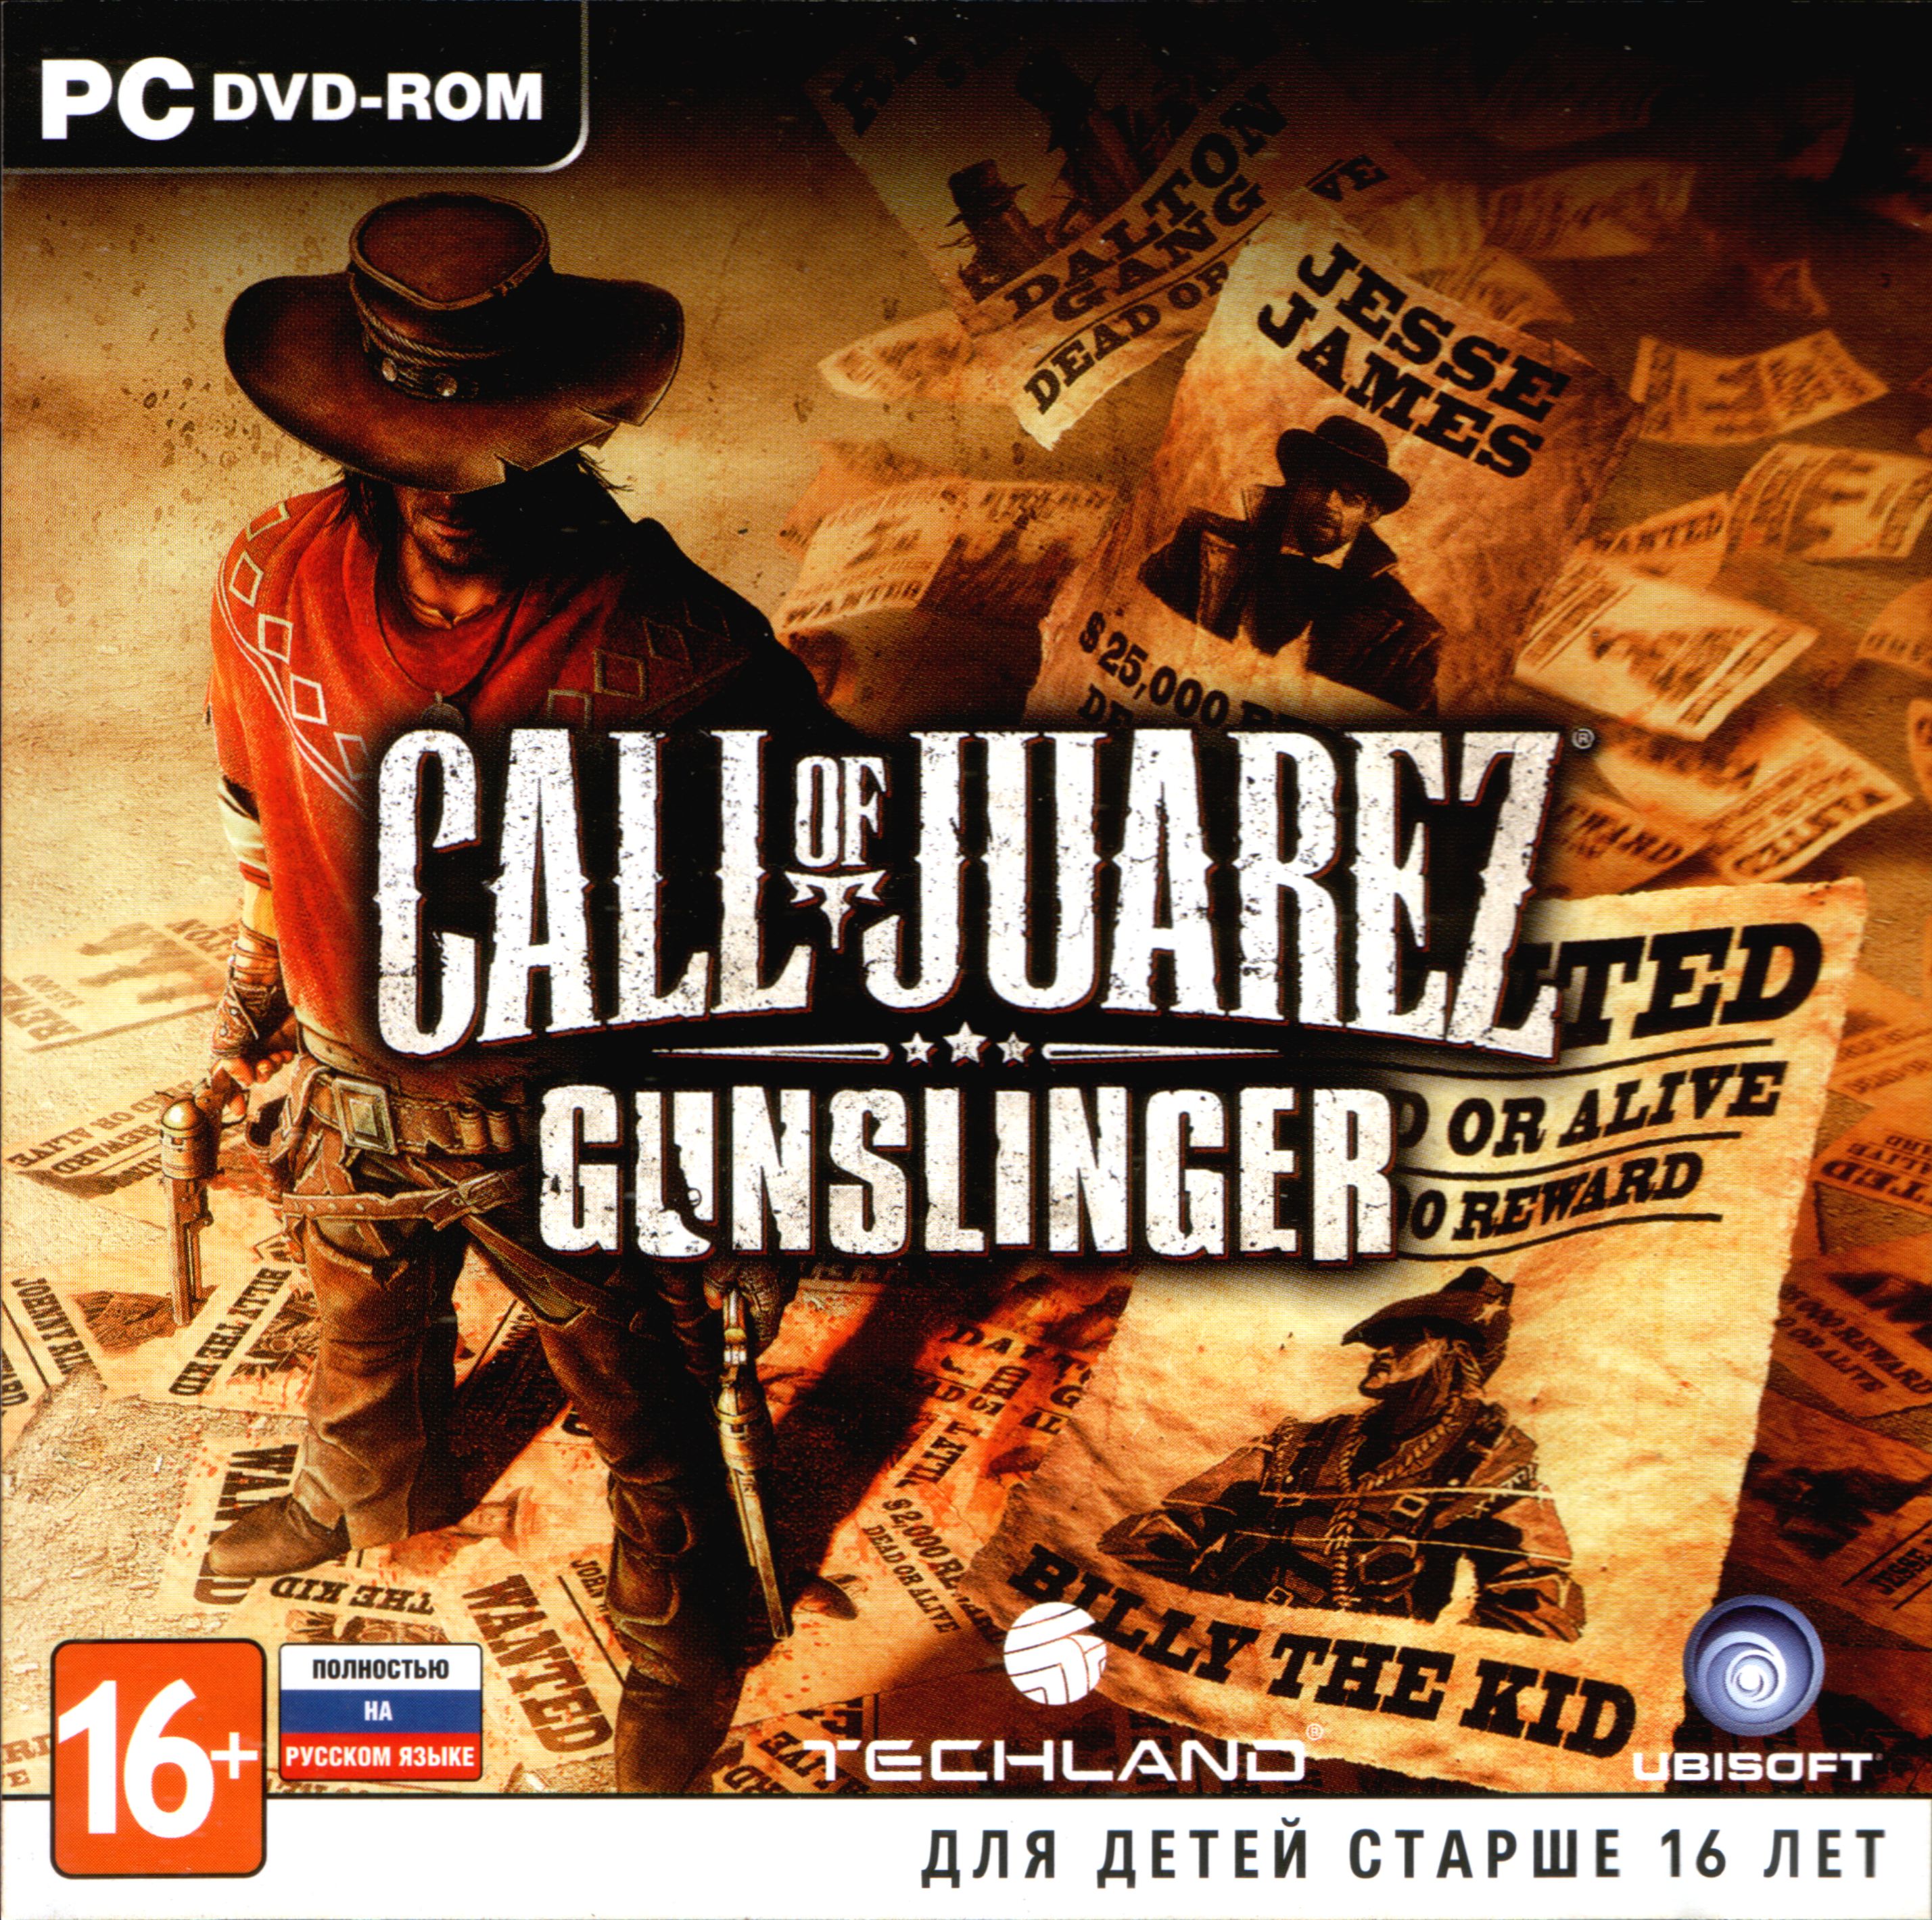 Игра call of gunslinger. Зов Хуареса ганслингер. Call of Juarez Gunslinger обложка. Call of Juarez: Gunslinger (2013). Call of Juarez Gunslinger 2.